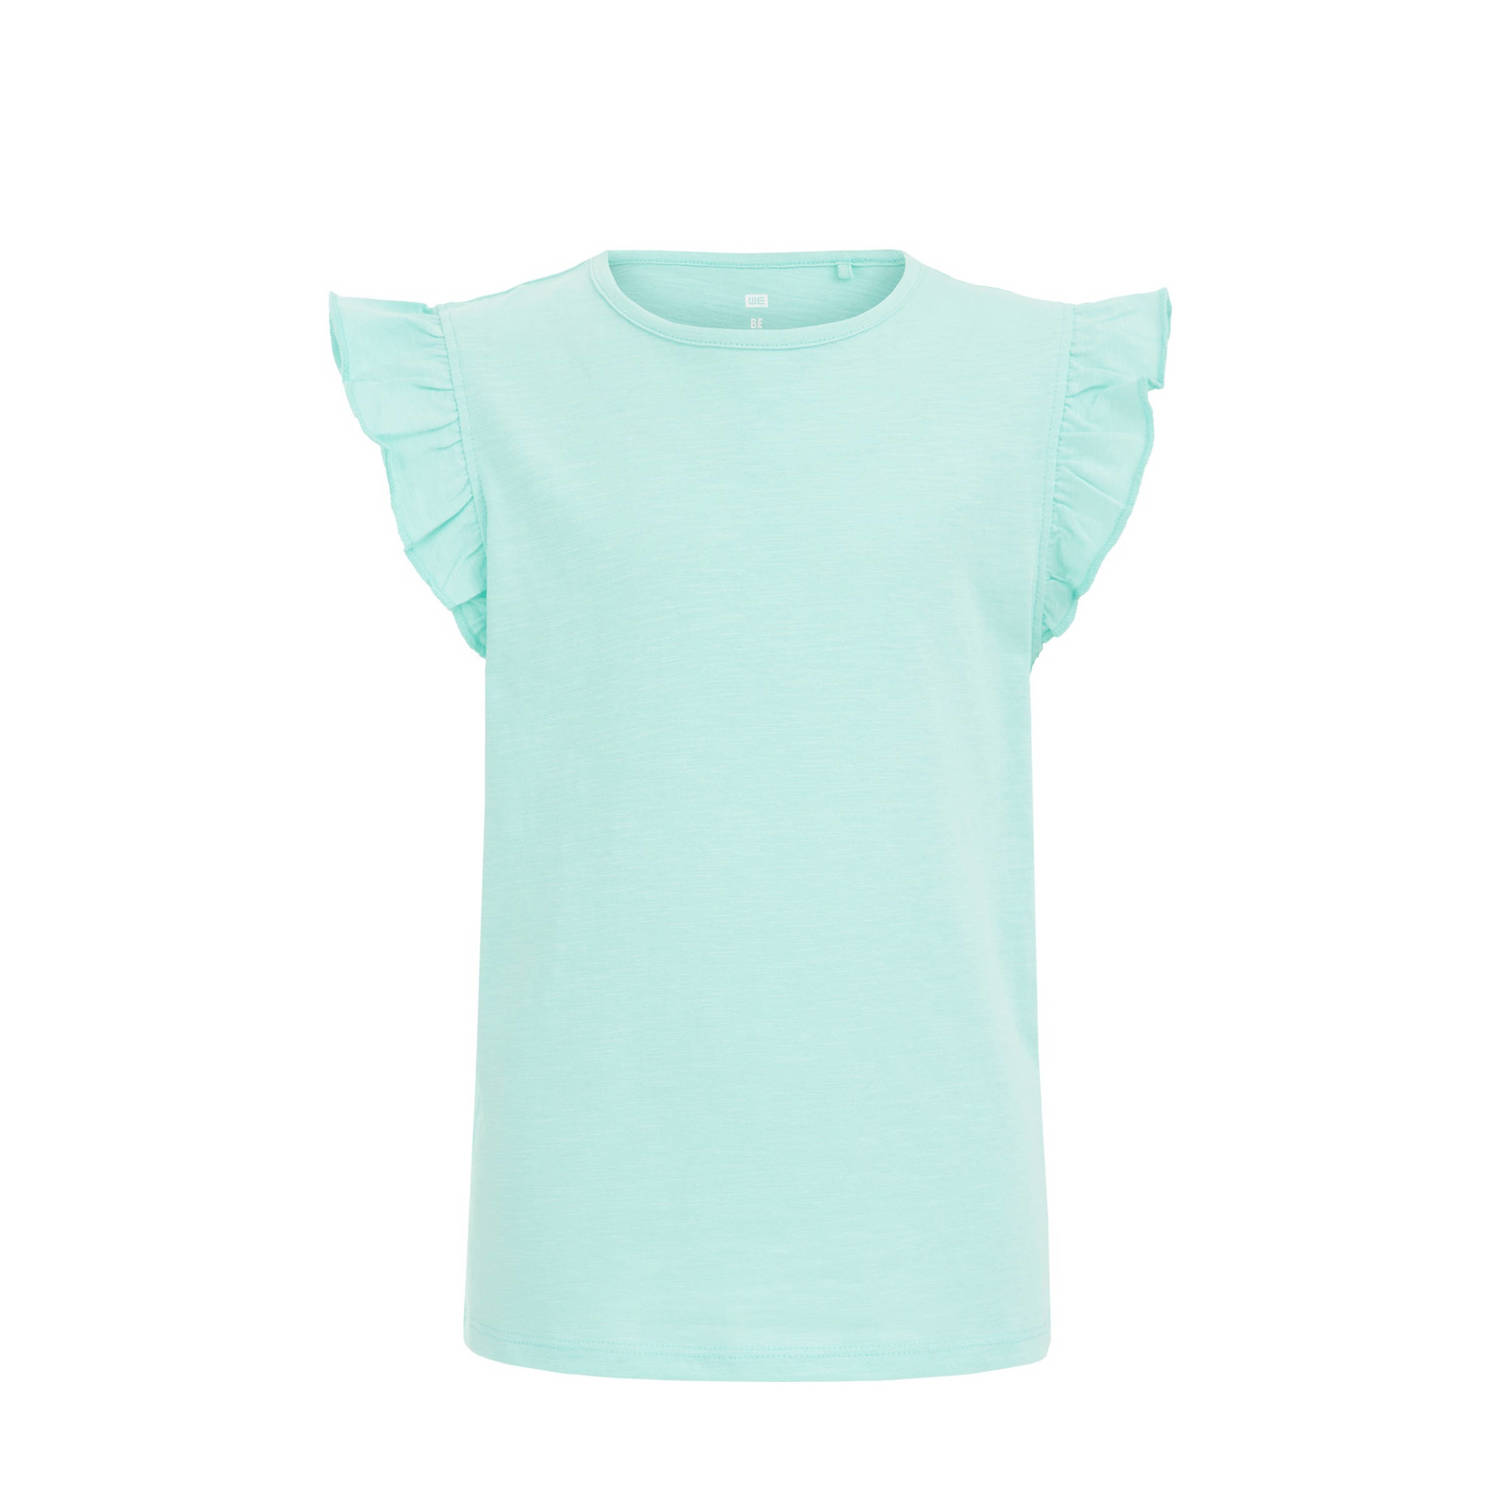 WE Fashion T-shirt aqua Blauw Meisjes Katoen Ronde hals Effen 110 116